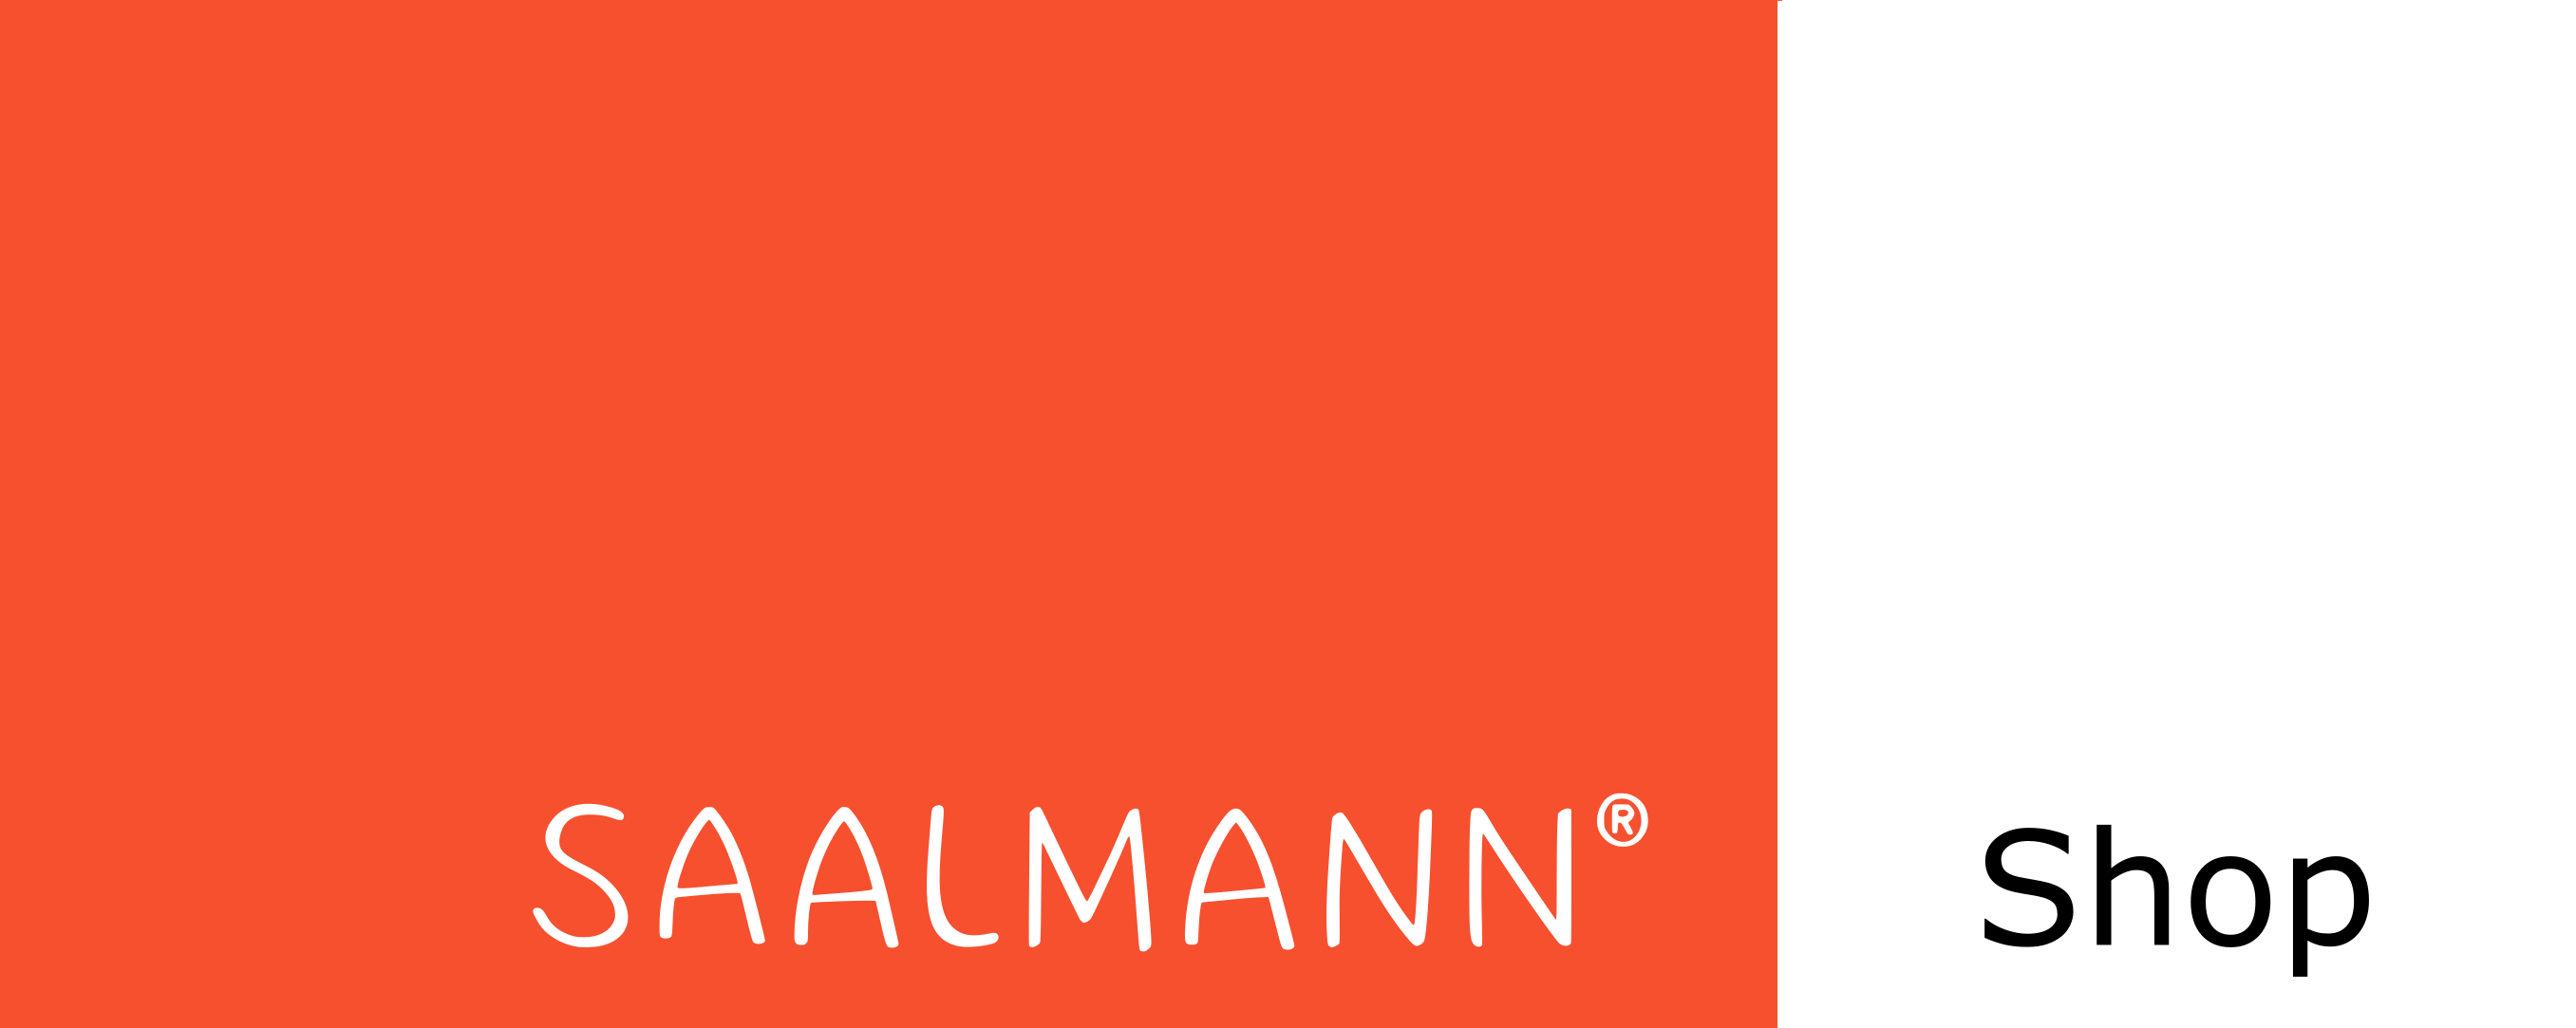 Saalmann medical Shop für UV-Phototherapie und Leitungswasser Iontophorese